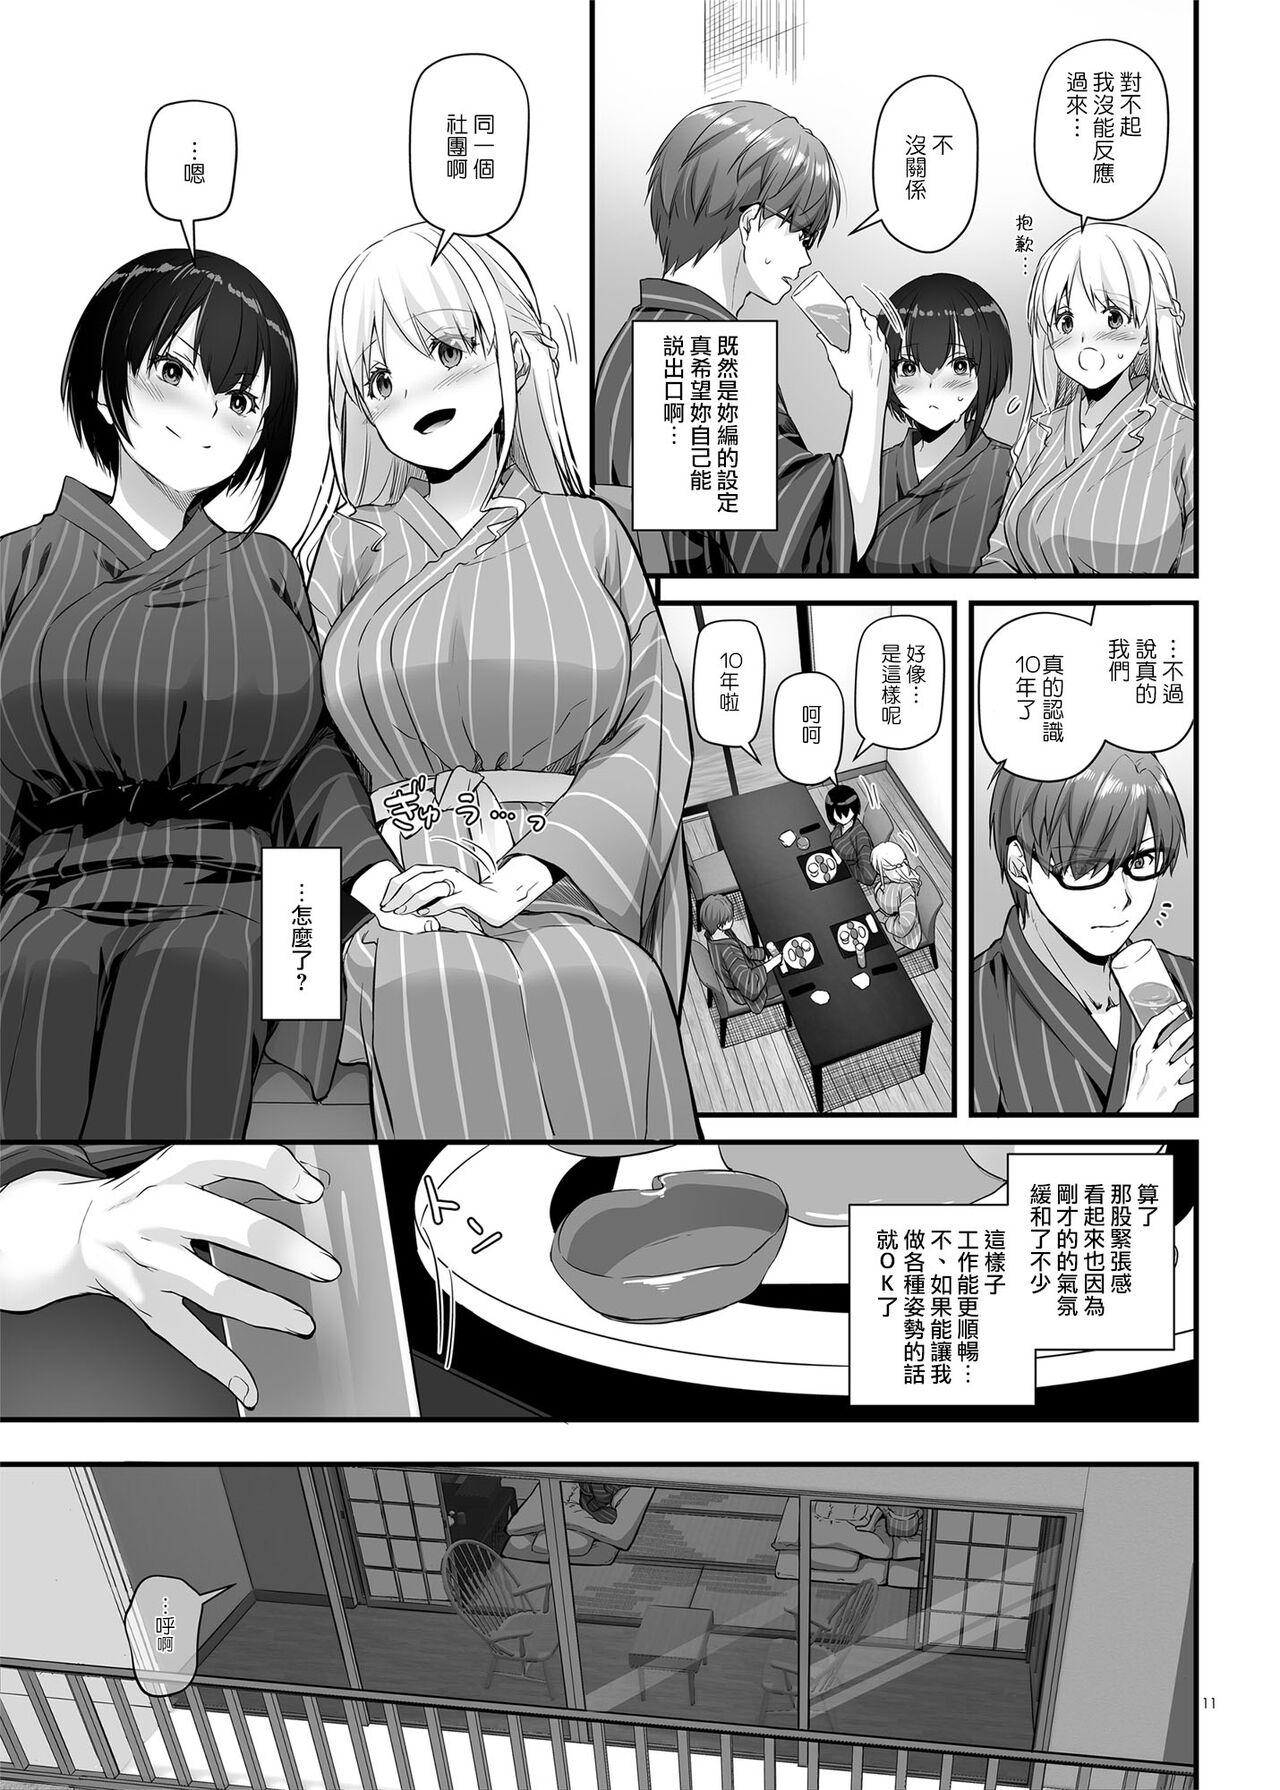 Retro Haramaseya 3 DLO-22 - Original Realitykings - Page 11